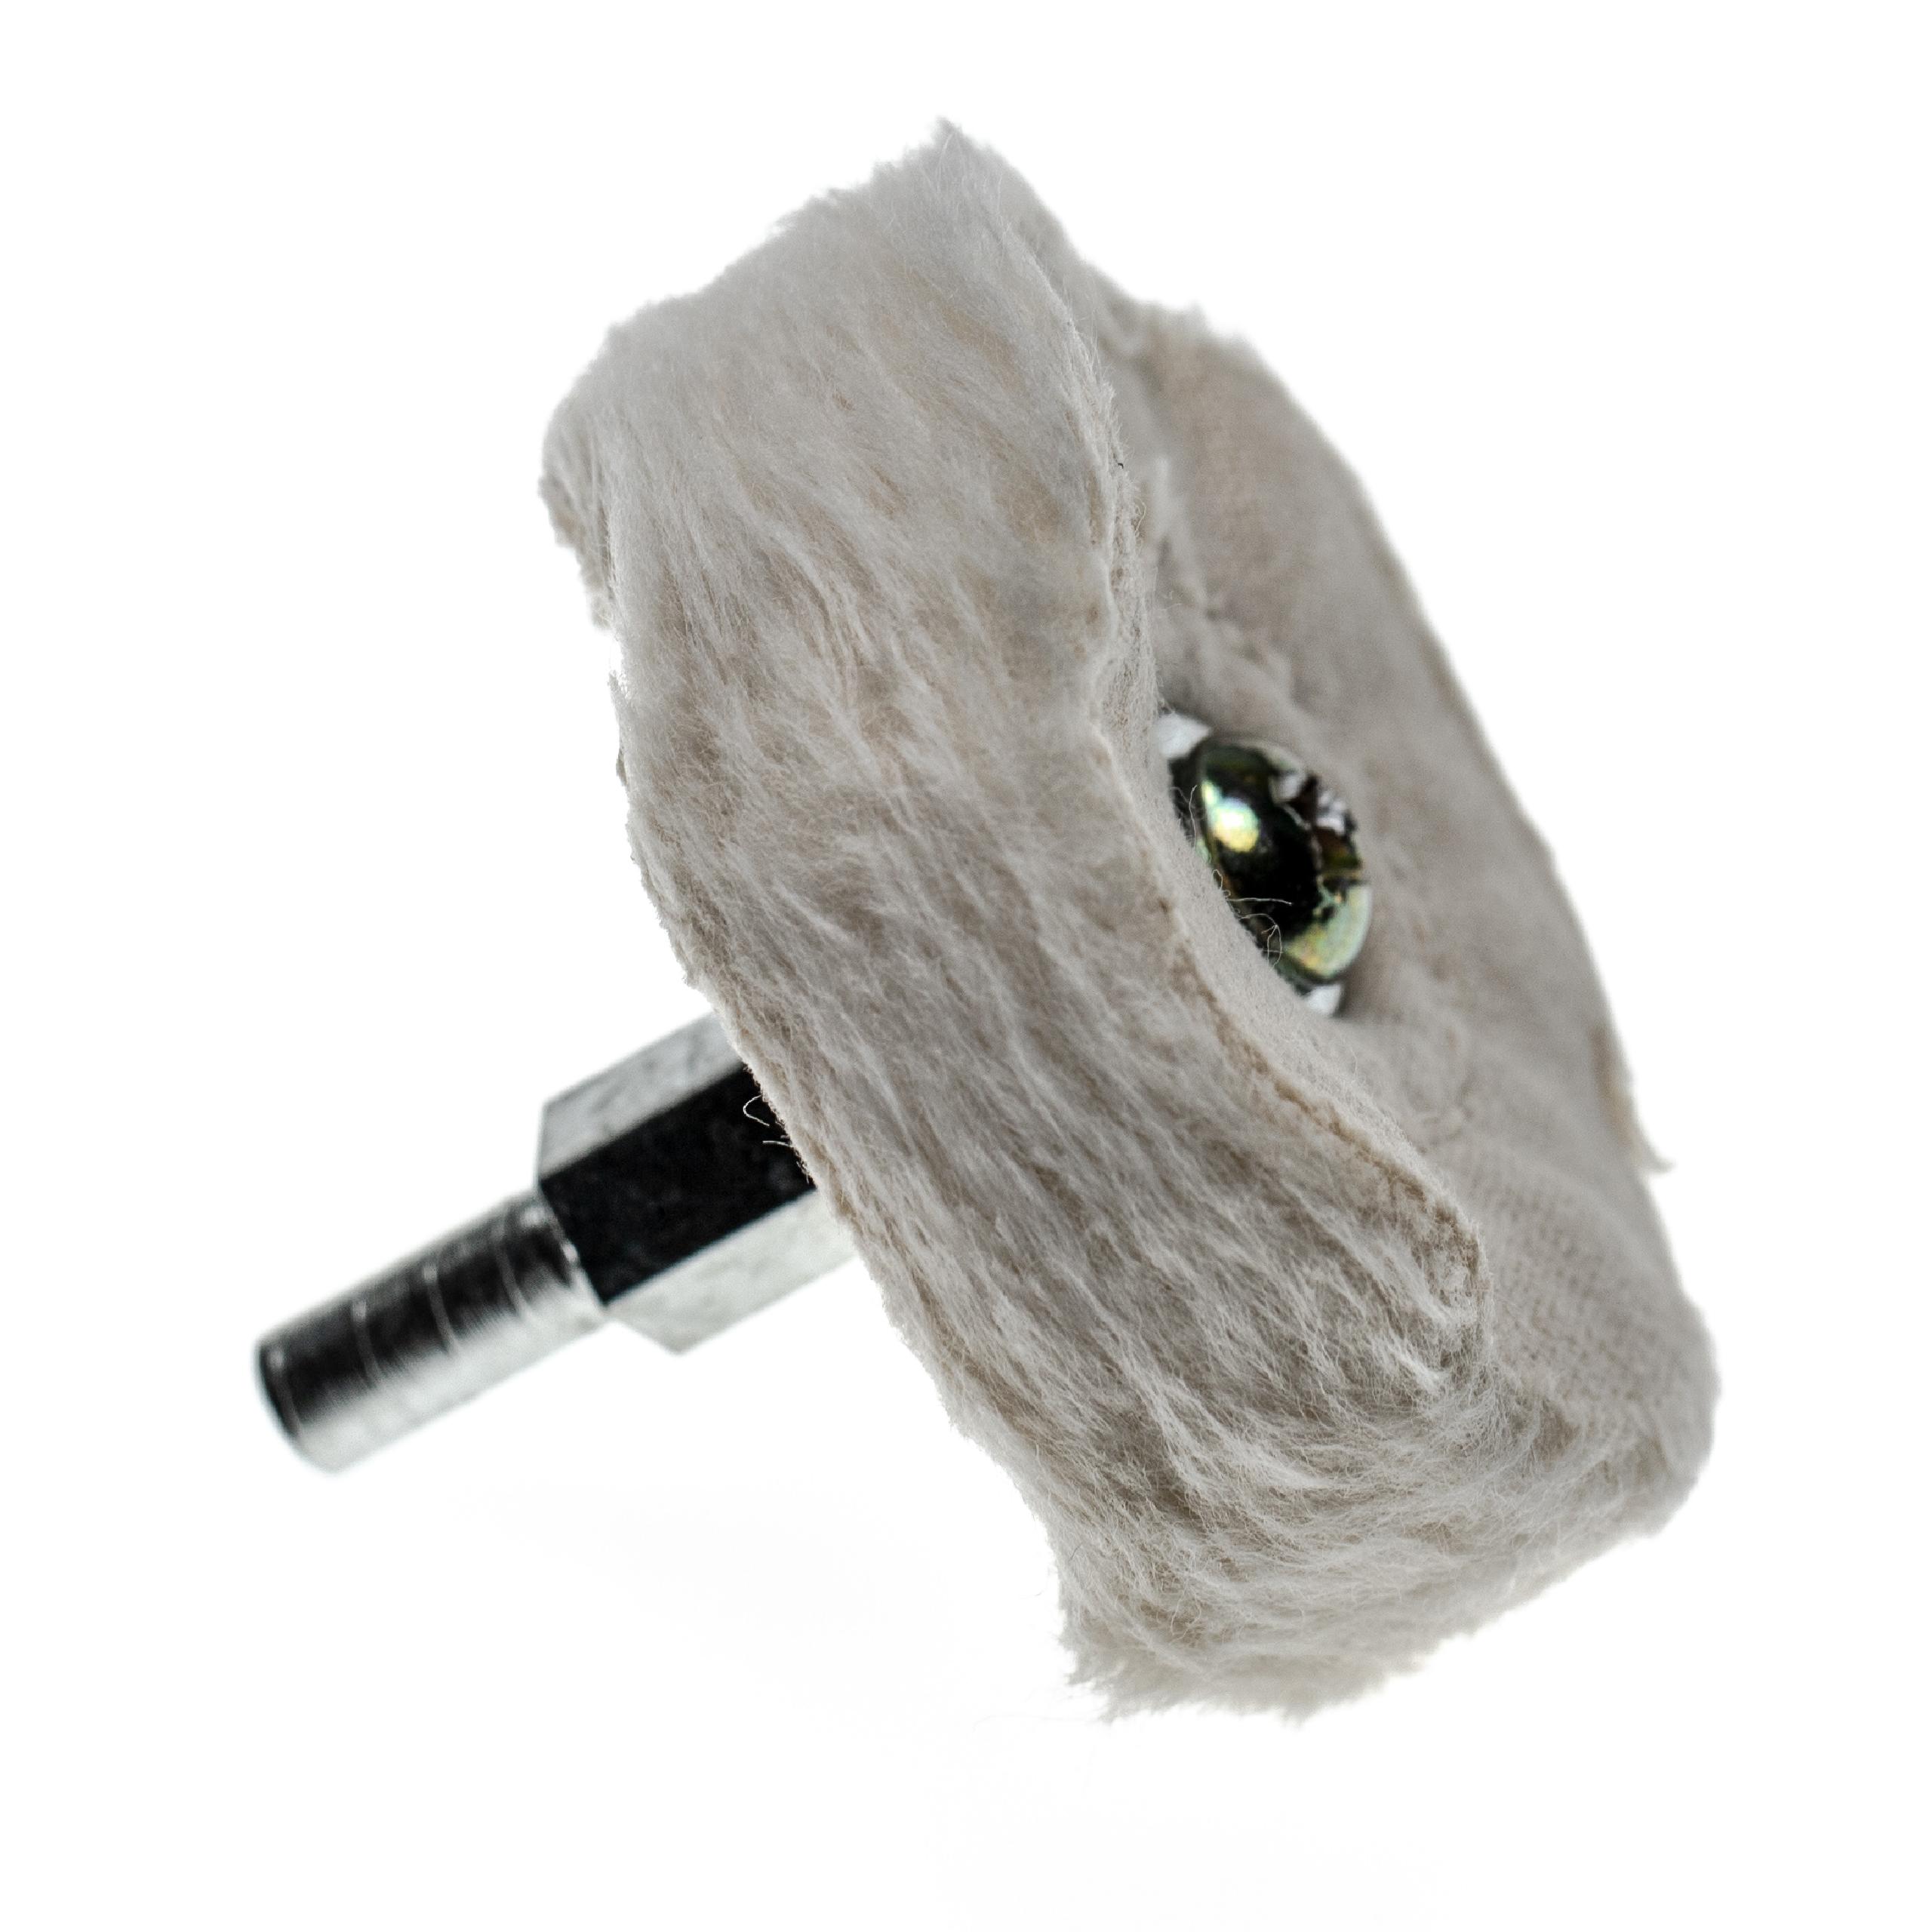 Bonnet de polissage pour modèle courant de perceuse sans fil de 5,1cm (2") de diamètre - Avec clé de serrage